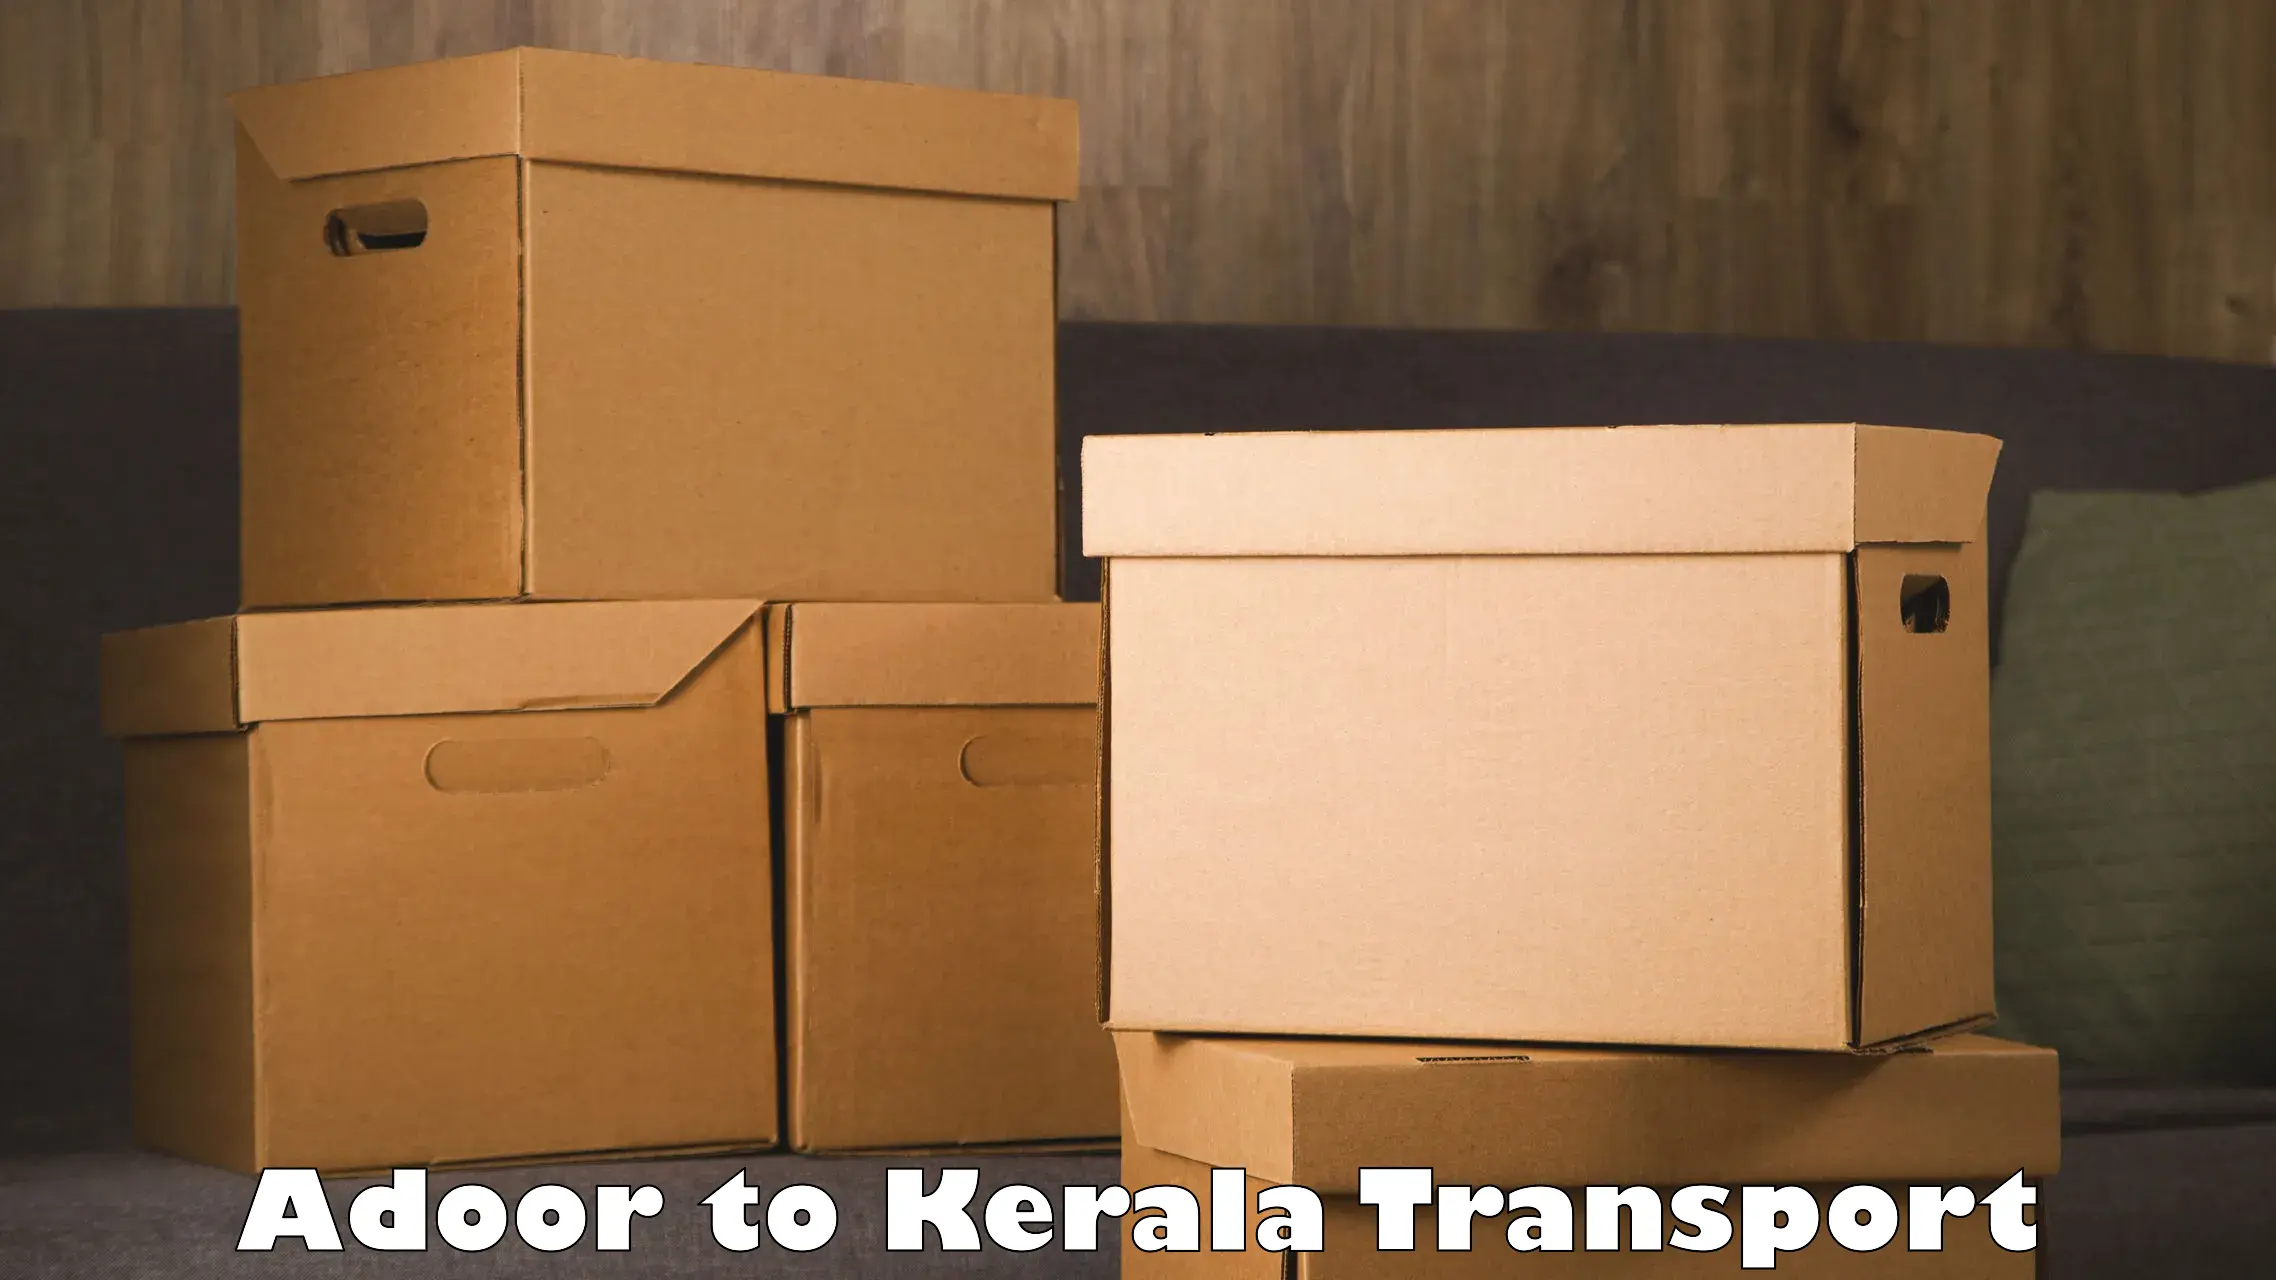 Daily parcel service transport Adoor to IIIT Kottayam